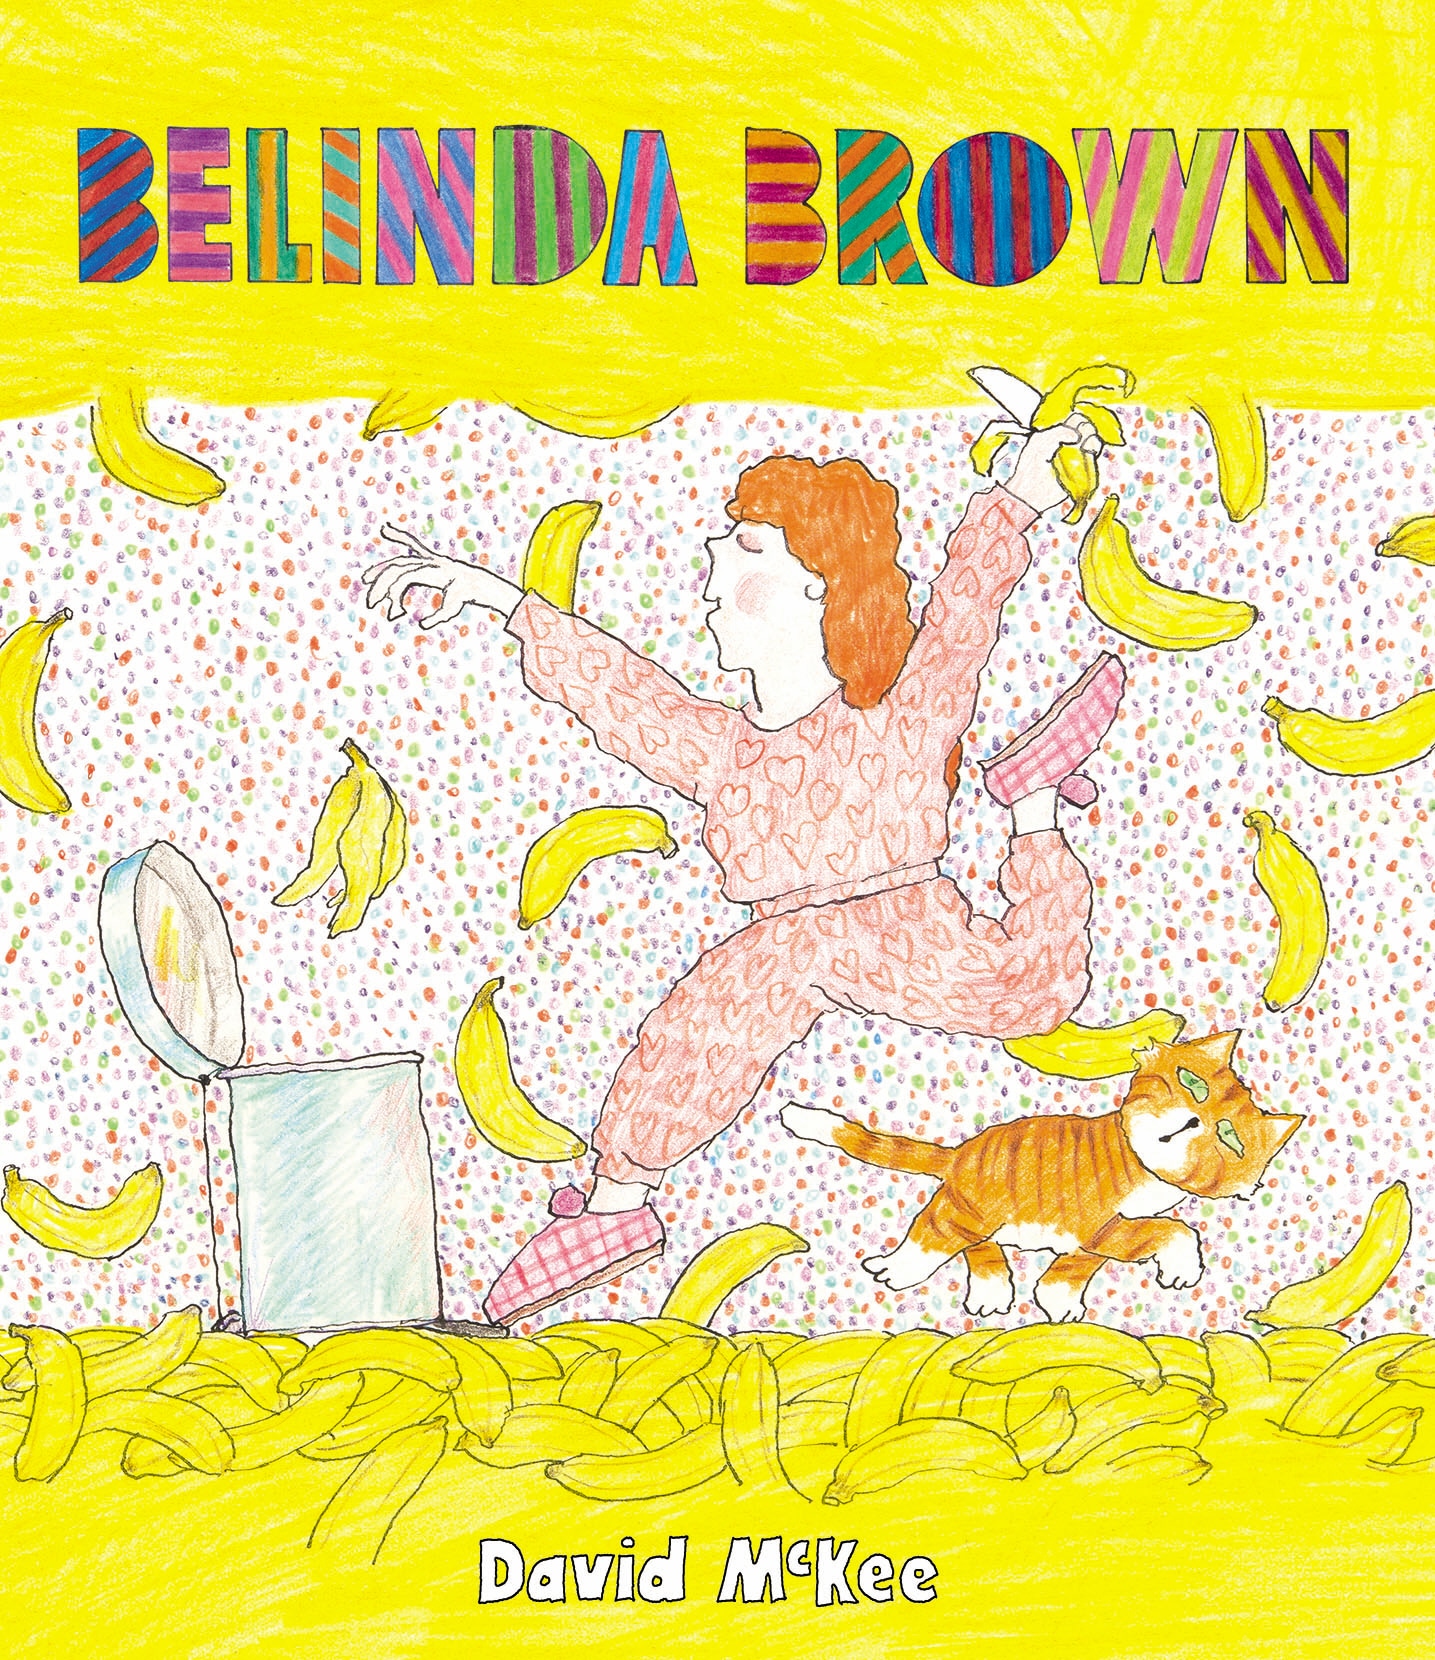 Book “Belinda Brown” by David McKee — July 4, 2019